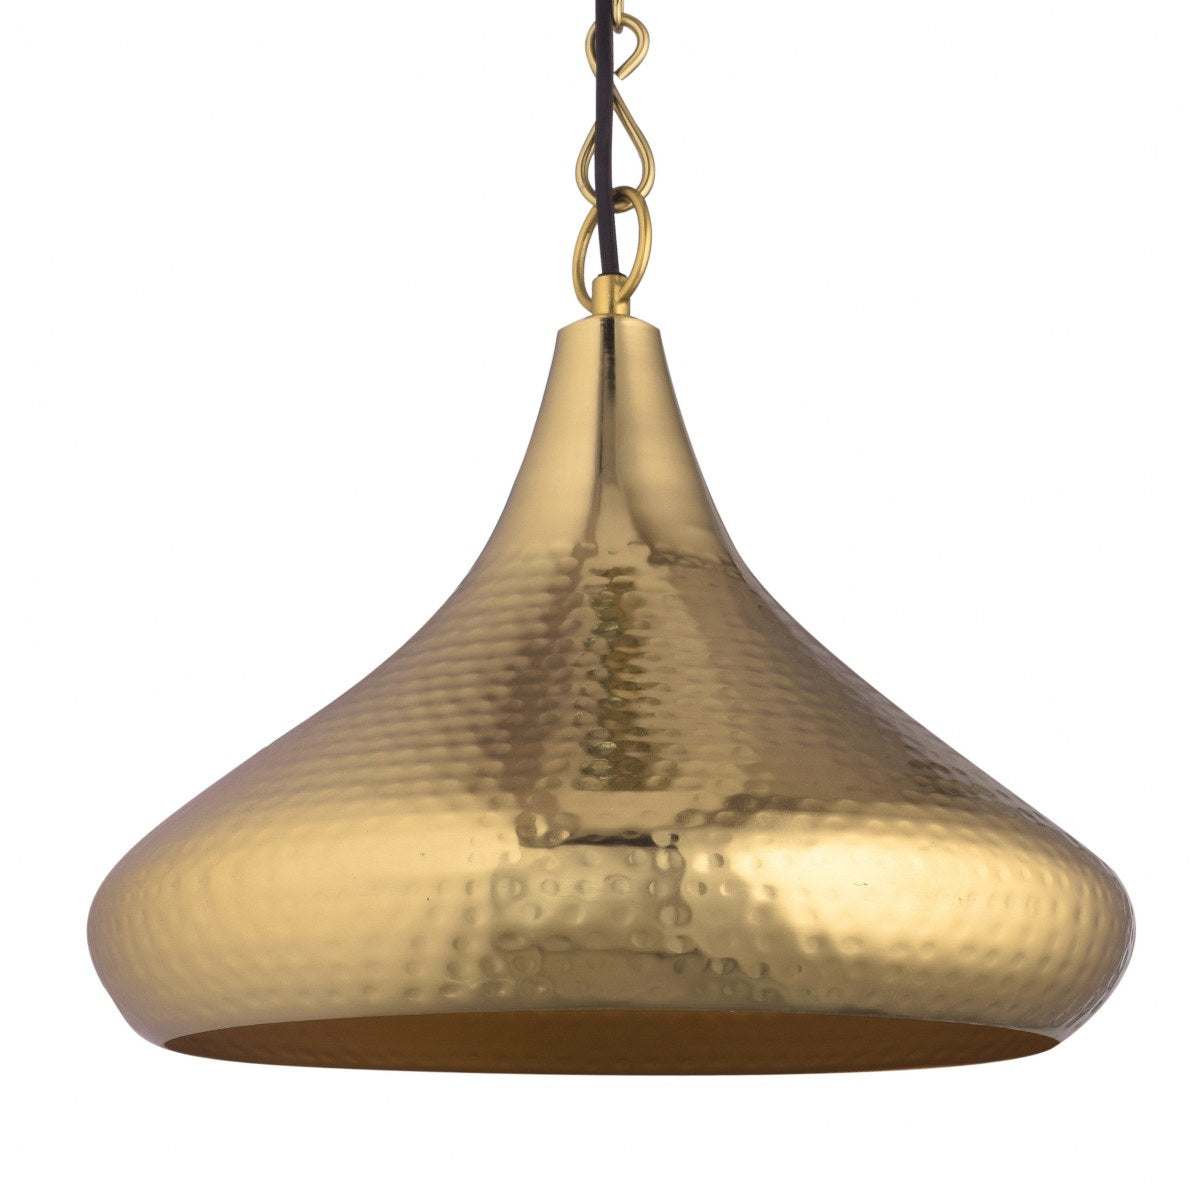 Detec™ Metal Pendants Mild Steel Brass Hanging Light